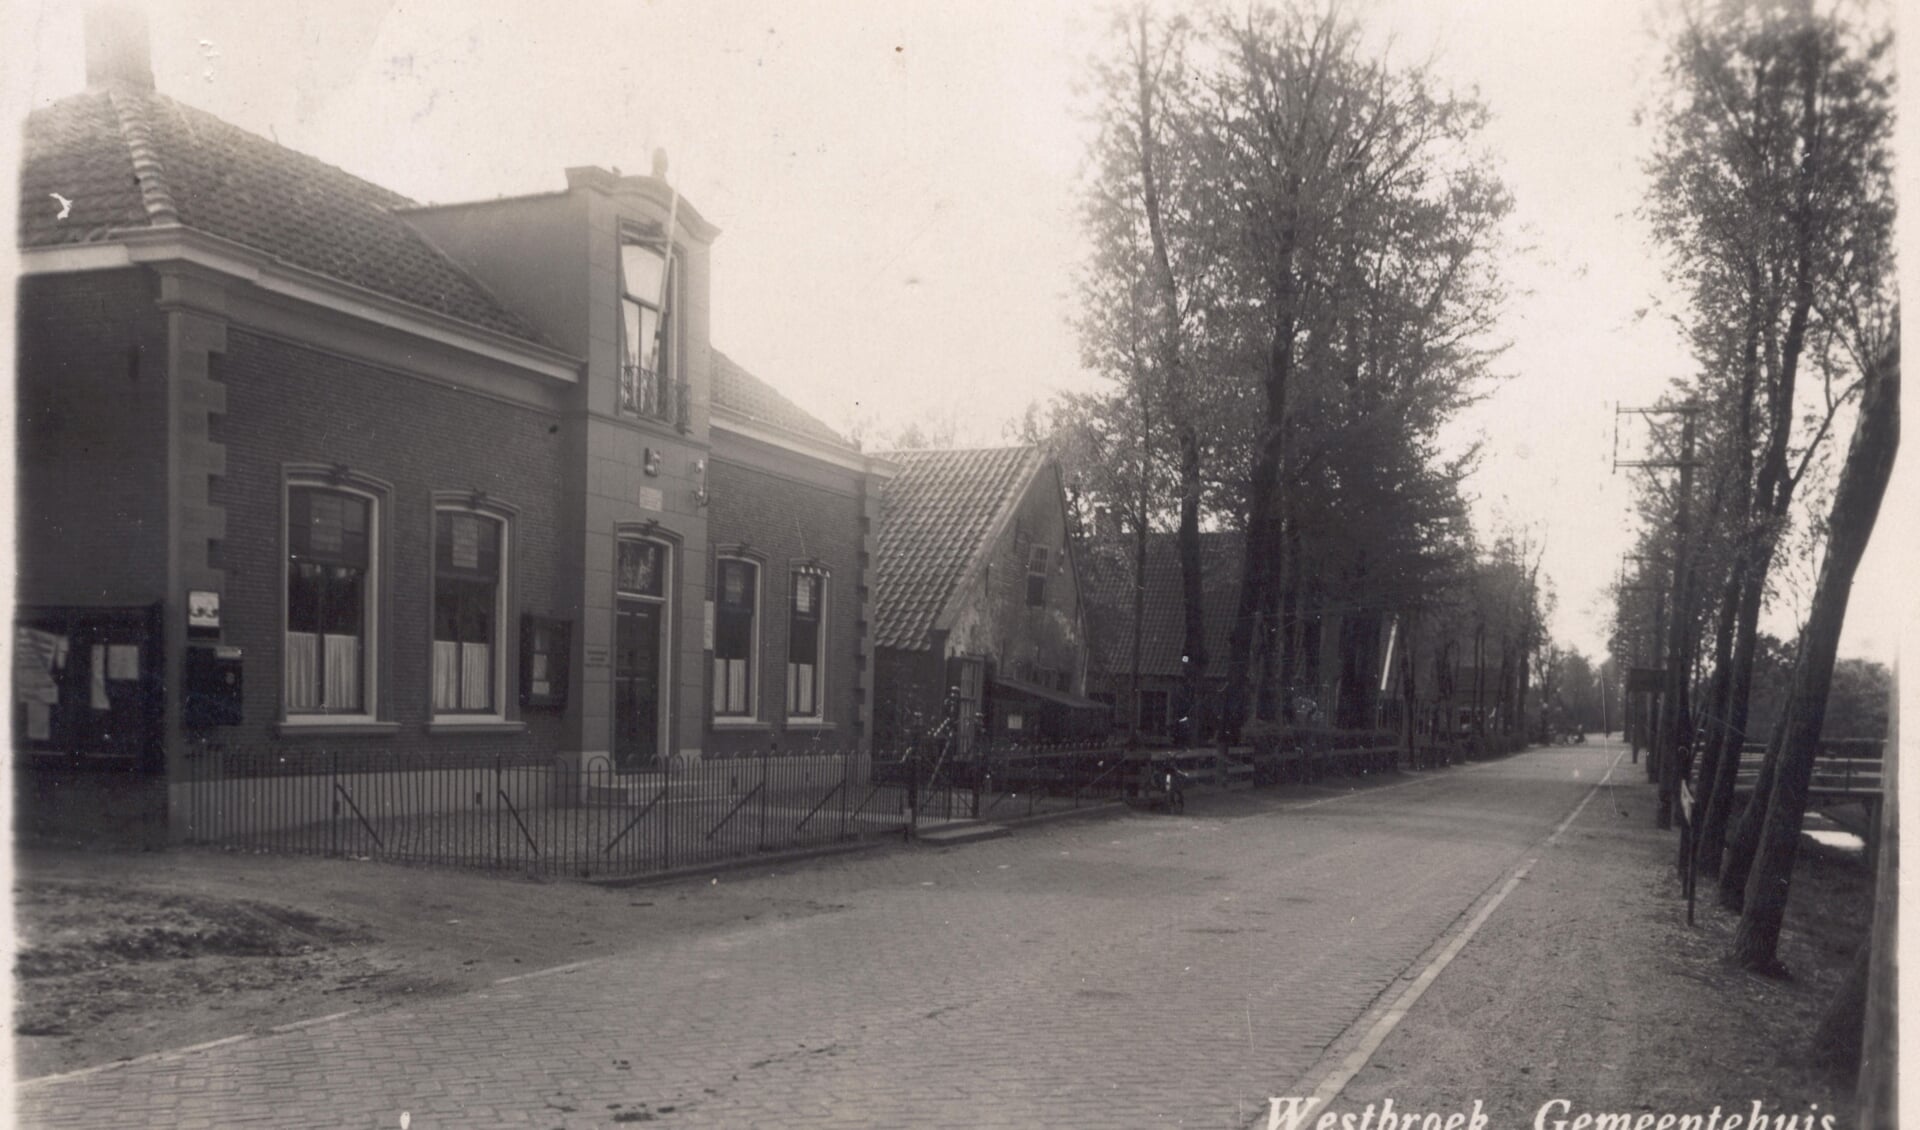 Het voormalig gemeentehuis van Westbroek stond destijds tussen het oude doktershuis en het armenhuis. Omstreeks 1939 is het doktershuis afgebroken en is er een nieuwe woning gebouwd voor het hoofd van de plaatselijke school. Het voormalige gemeentehuis was enkele decennia tot 1993 het hoofdkwartier 